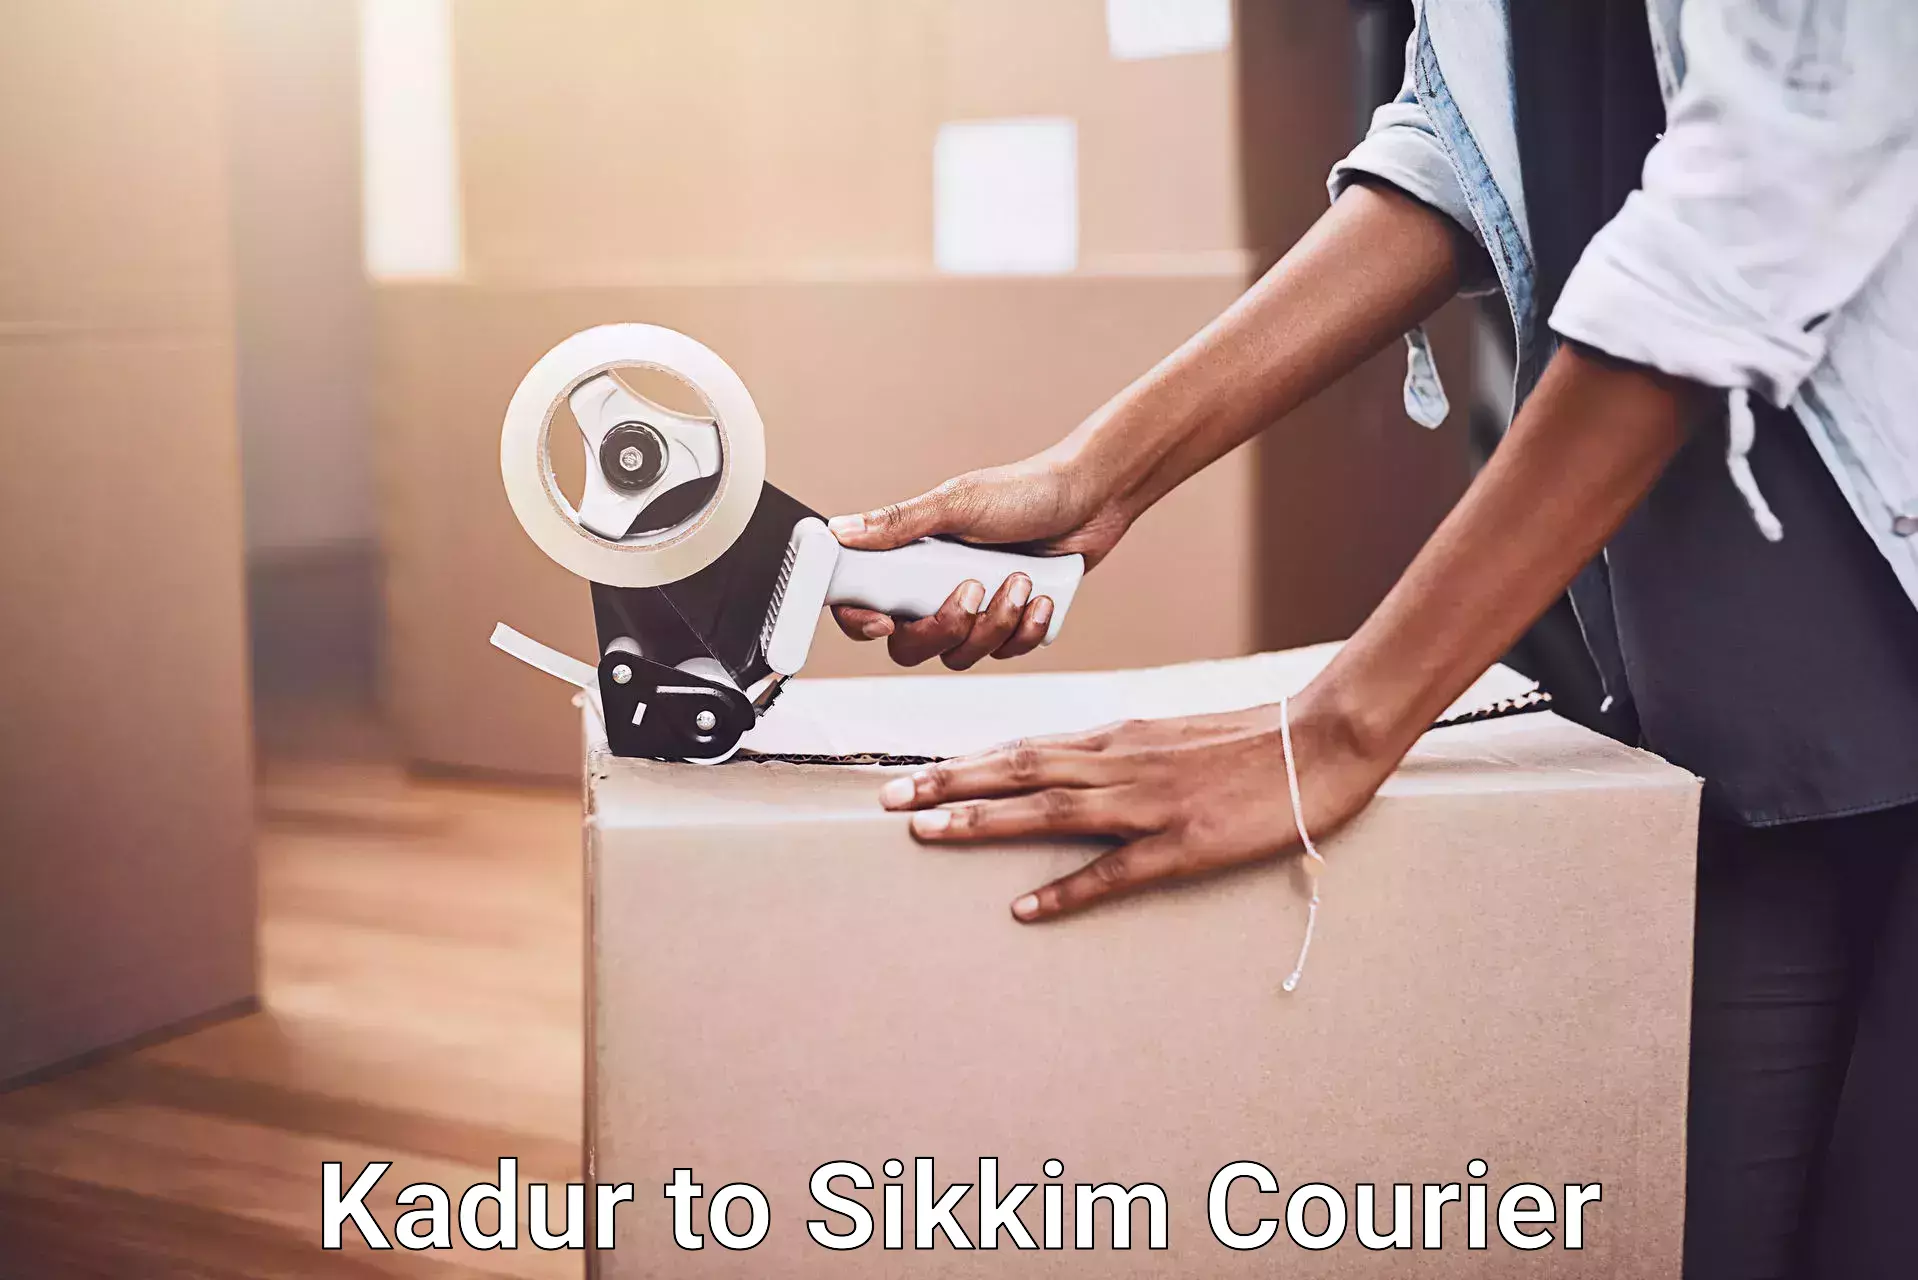 Furniture transport experts Kadur to East Sikkim